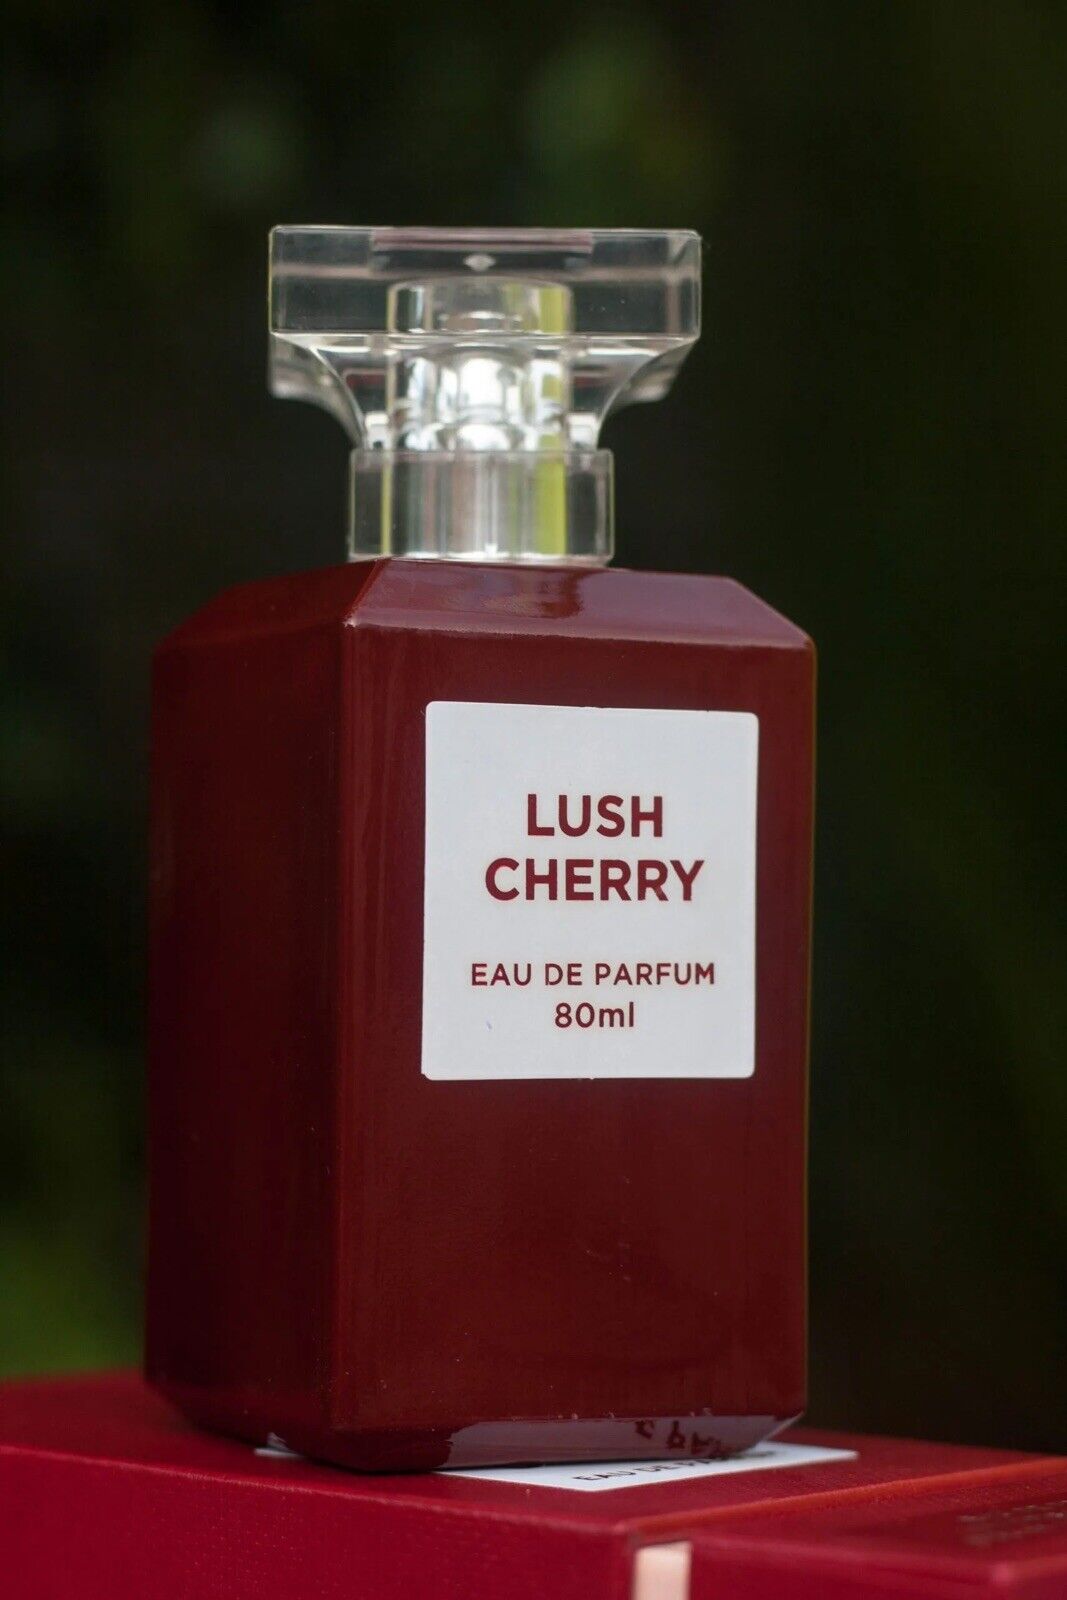 Lush Cherry by Fragrance World 2.7 oz / 80 ml Eau De Parfum Spray